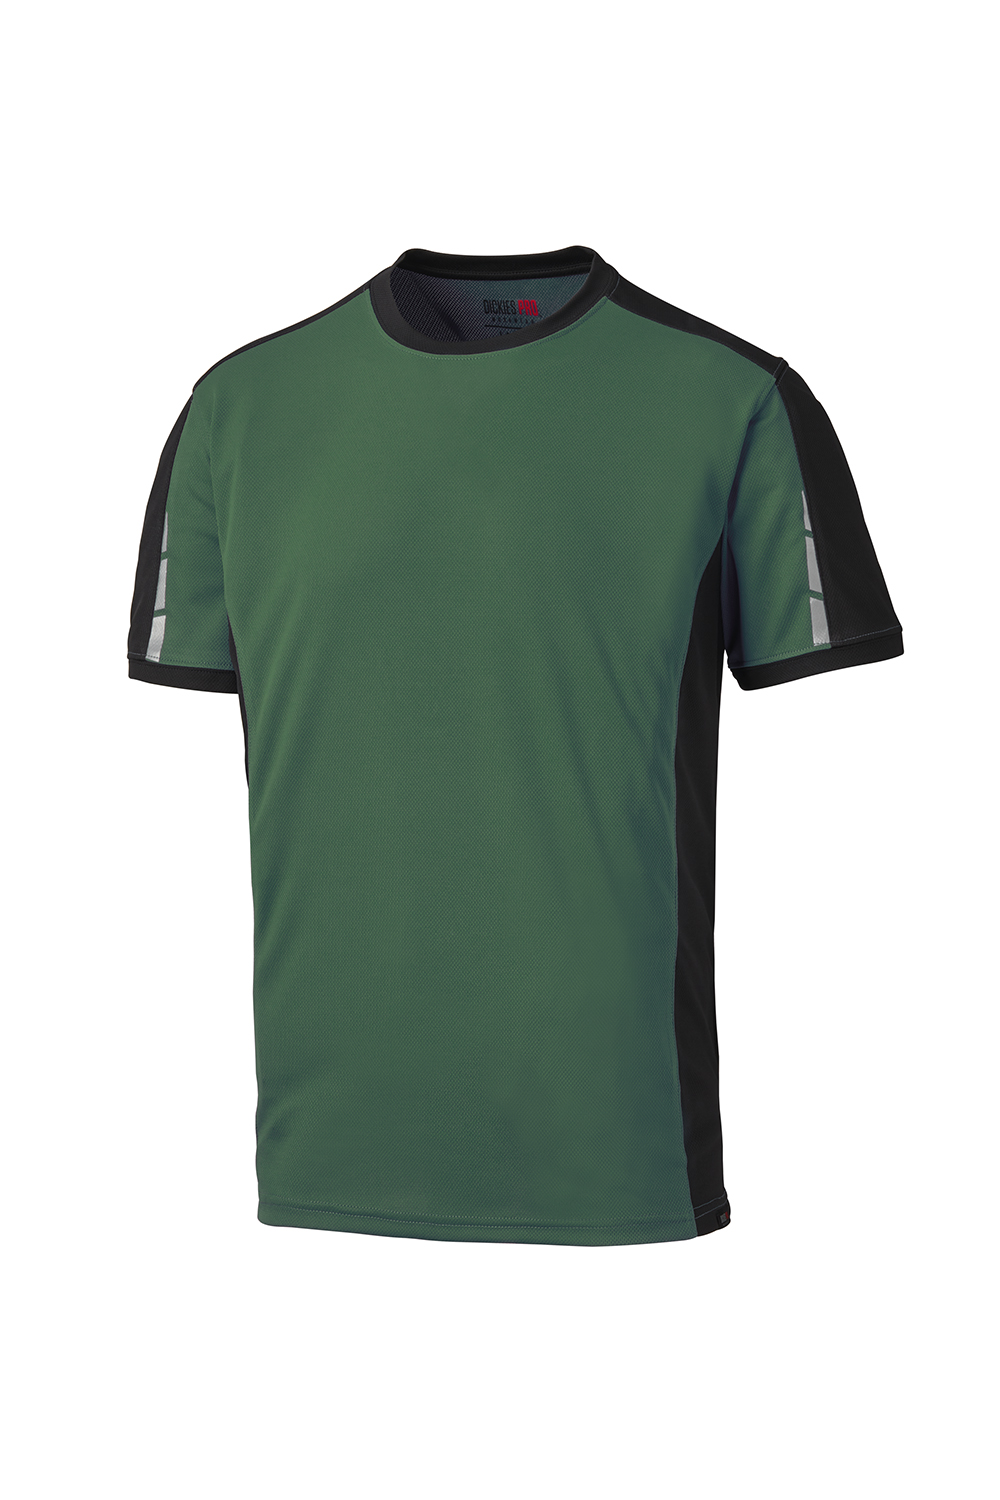 Dickies PRO Herren T-Shirt Activ Mesh, grün/schwarz